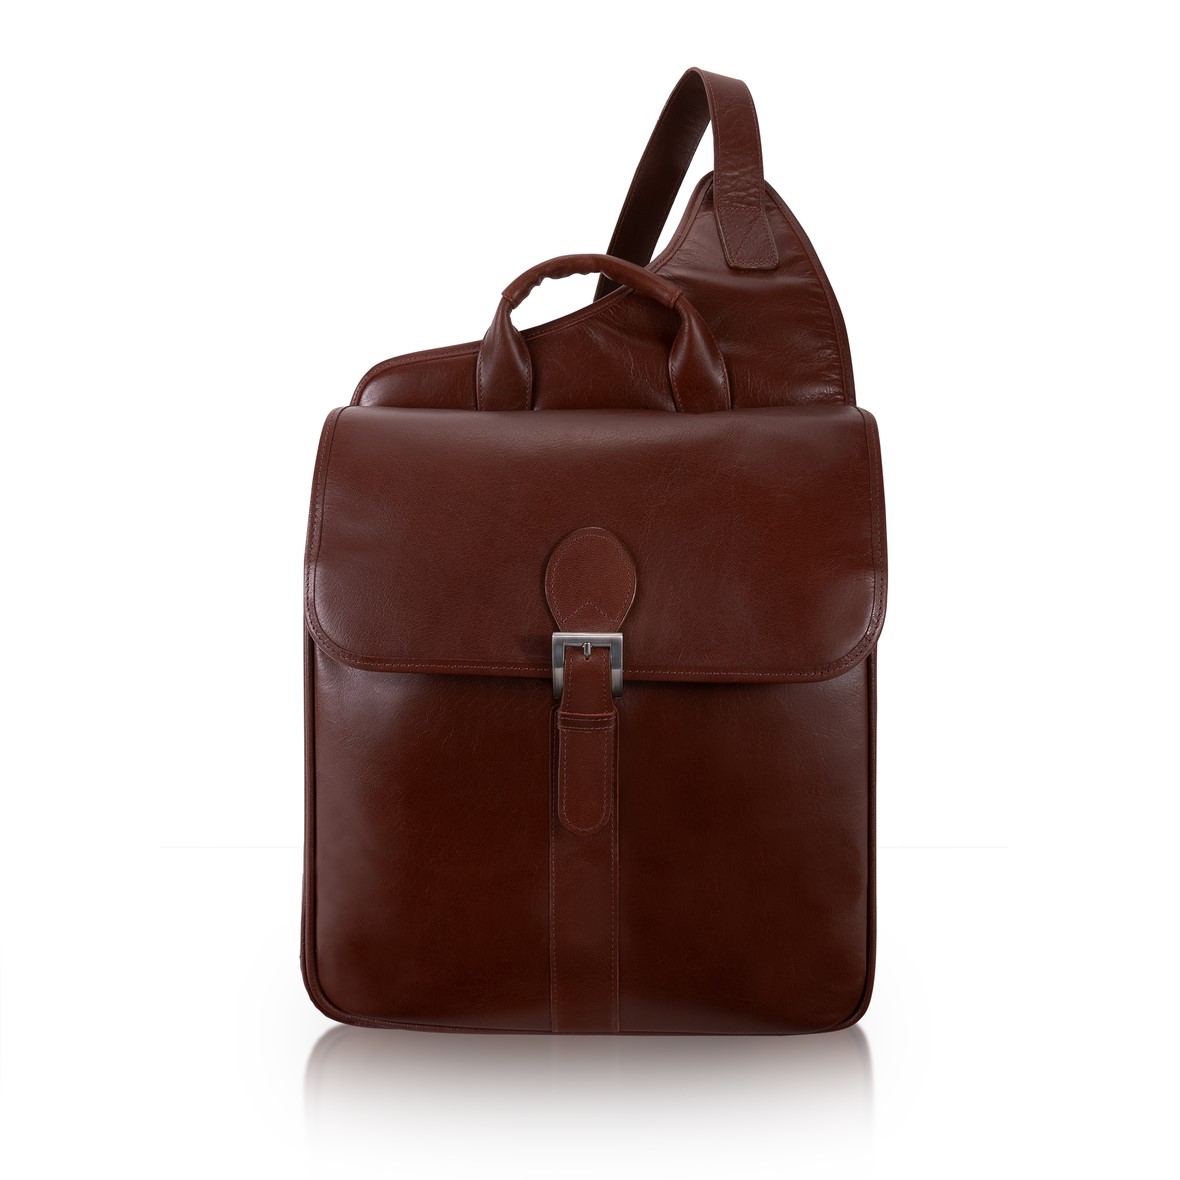 25414 Sabotino Cognac Leather Sling Messenger Bag